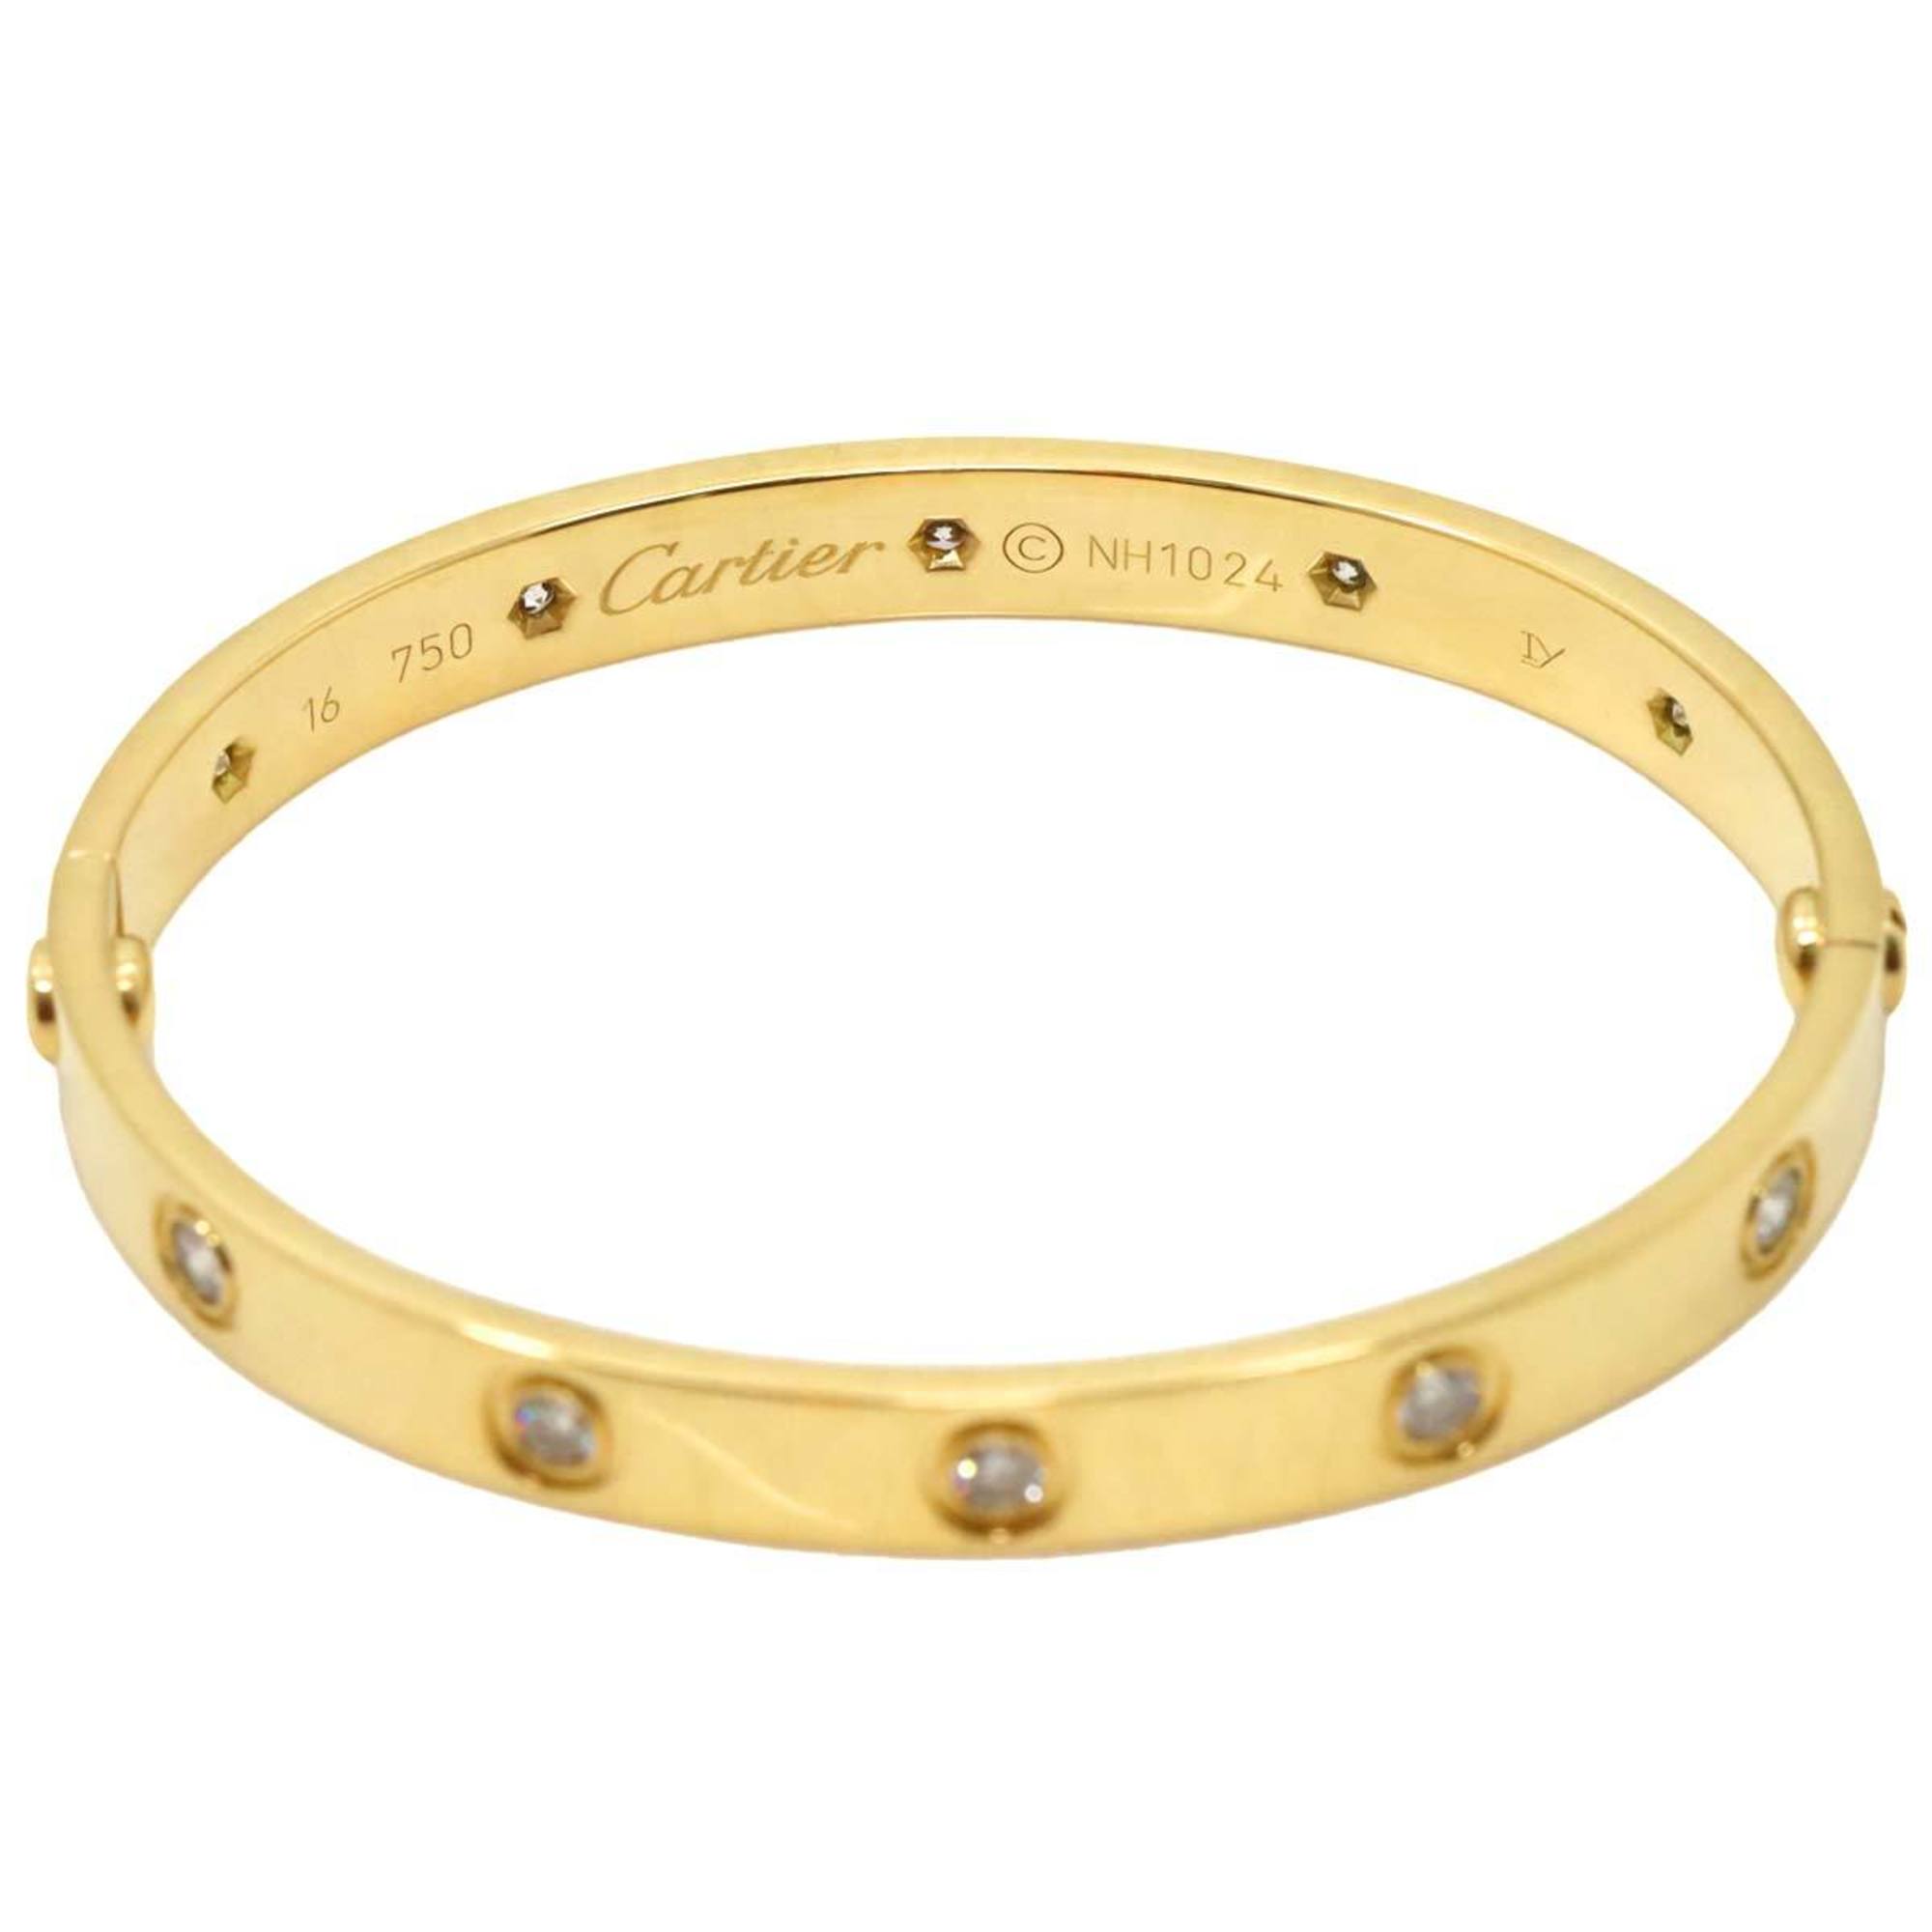 Cartier Love Bracelet Full Diamond 10P #16 K18 YG Yellow Gold 750 Bangle